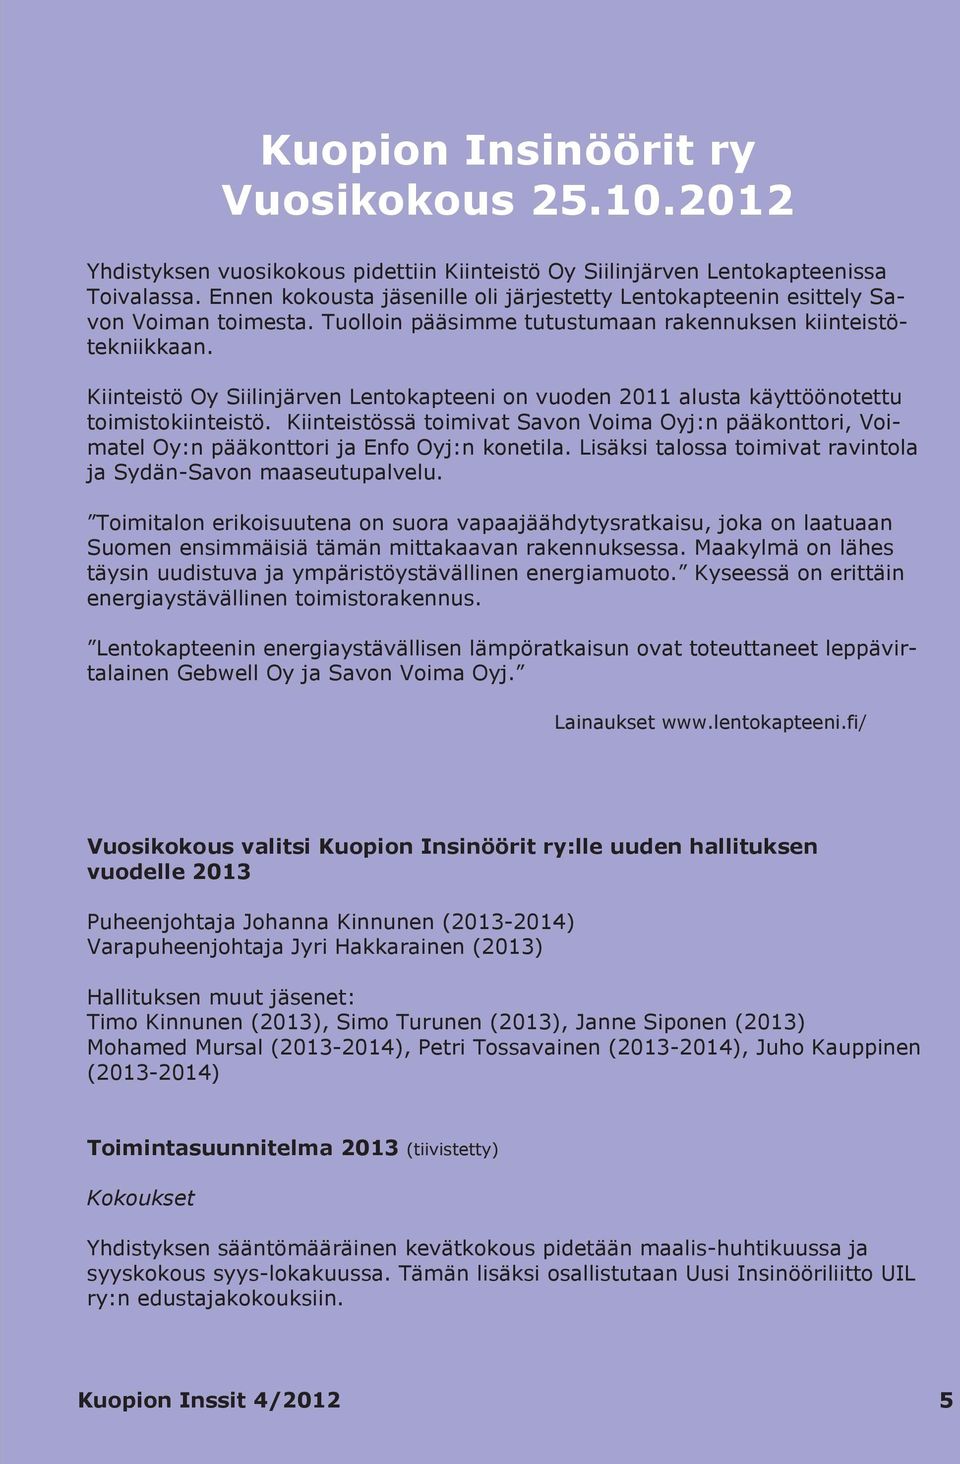 Kiinteistö Oy Siilinjärven Lentokapteeni on vuoden 2011 alusta käyttöönotettu toimistokiinteistö.